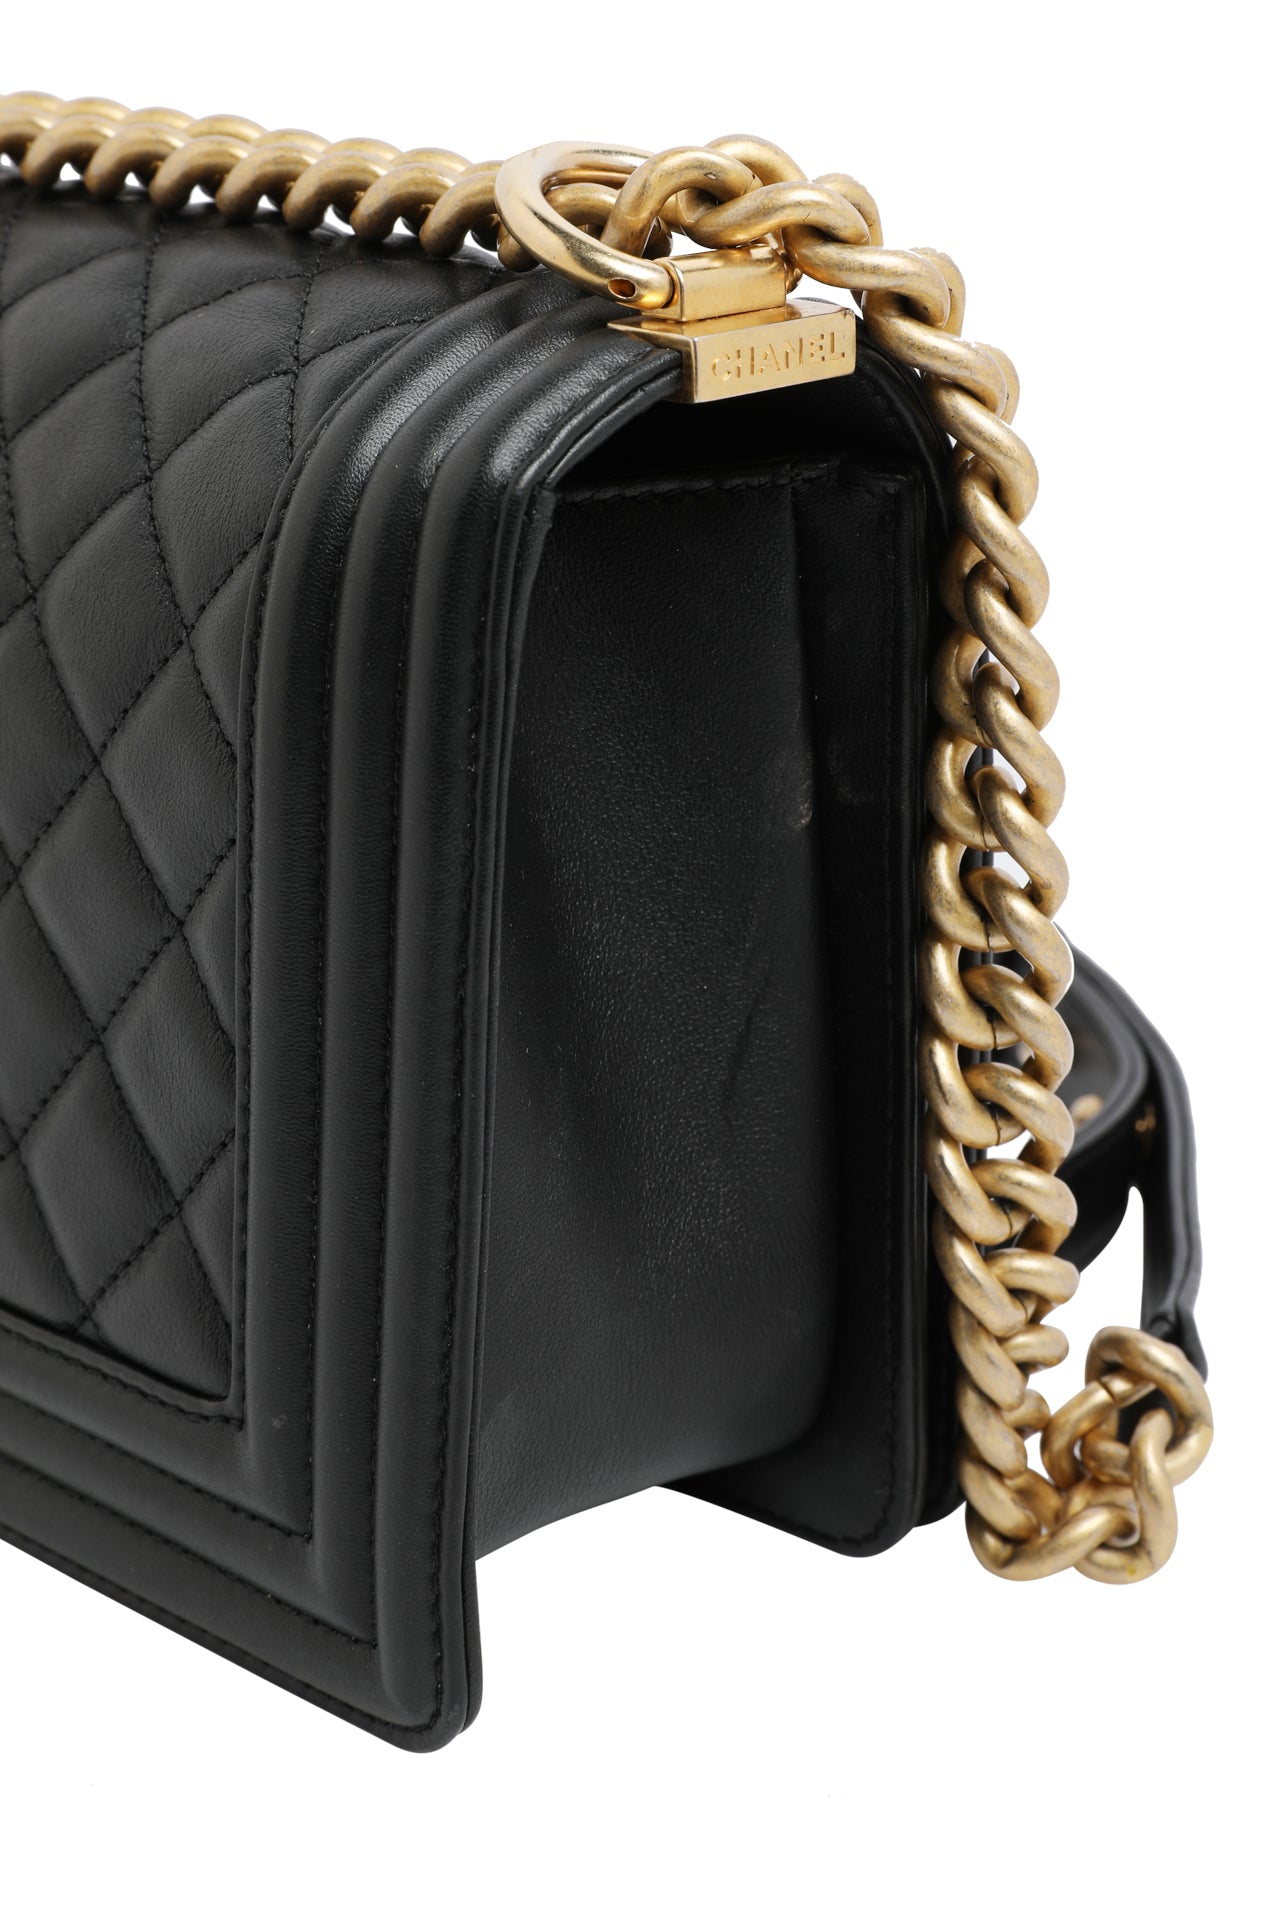 Chanel Medium Boy Bag